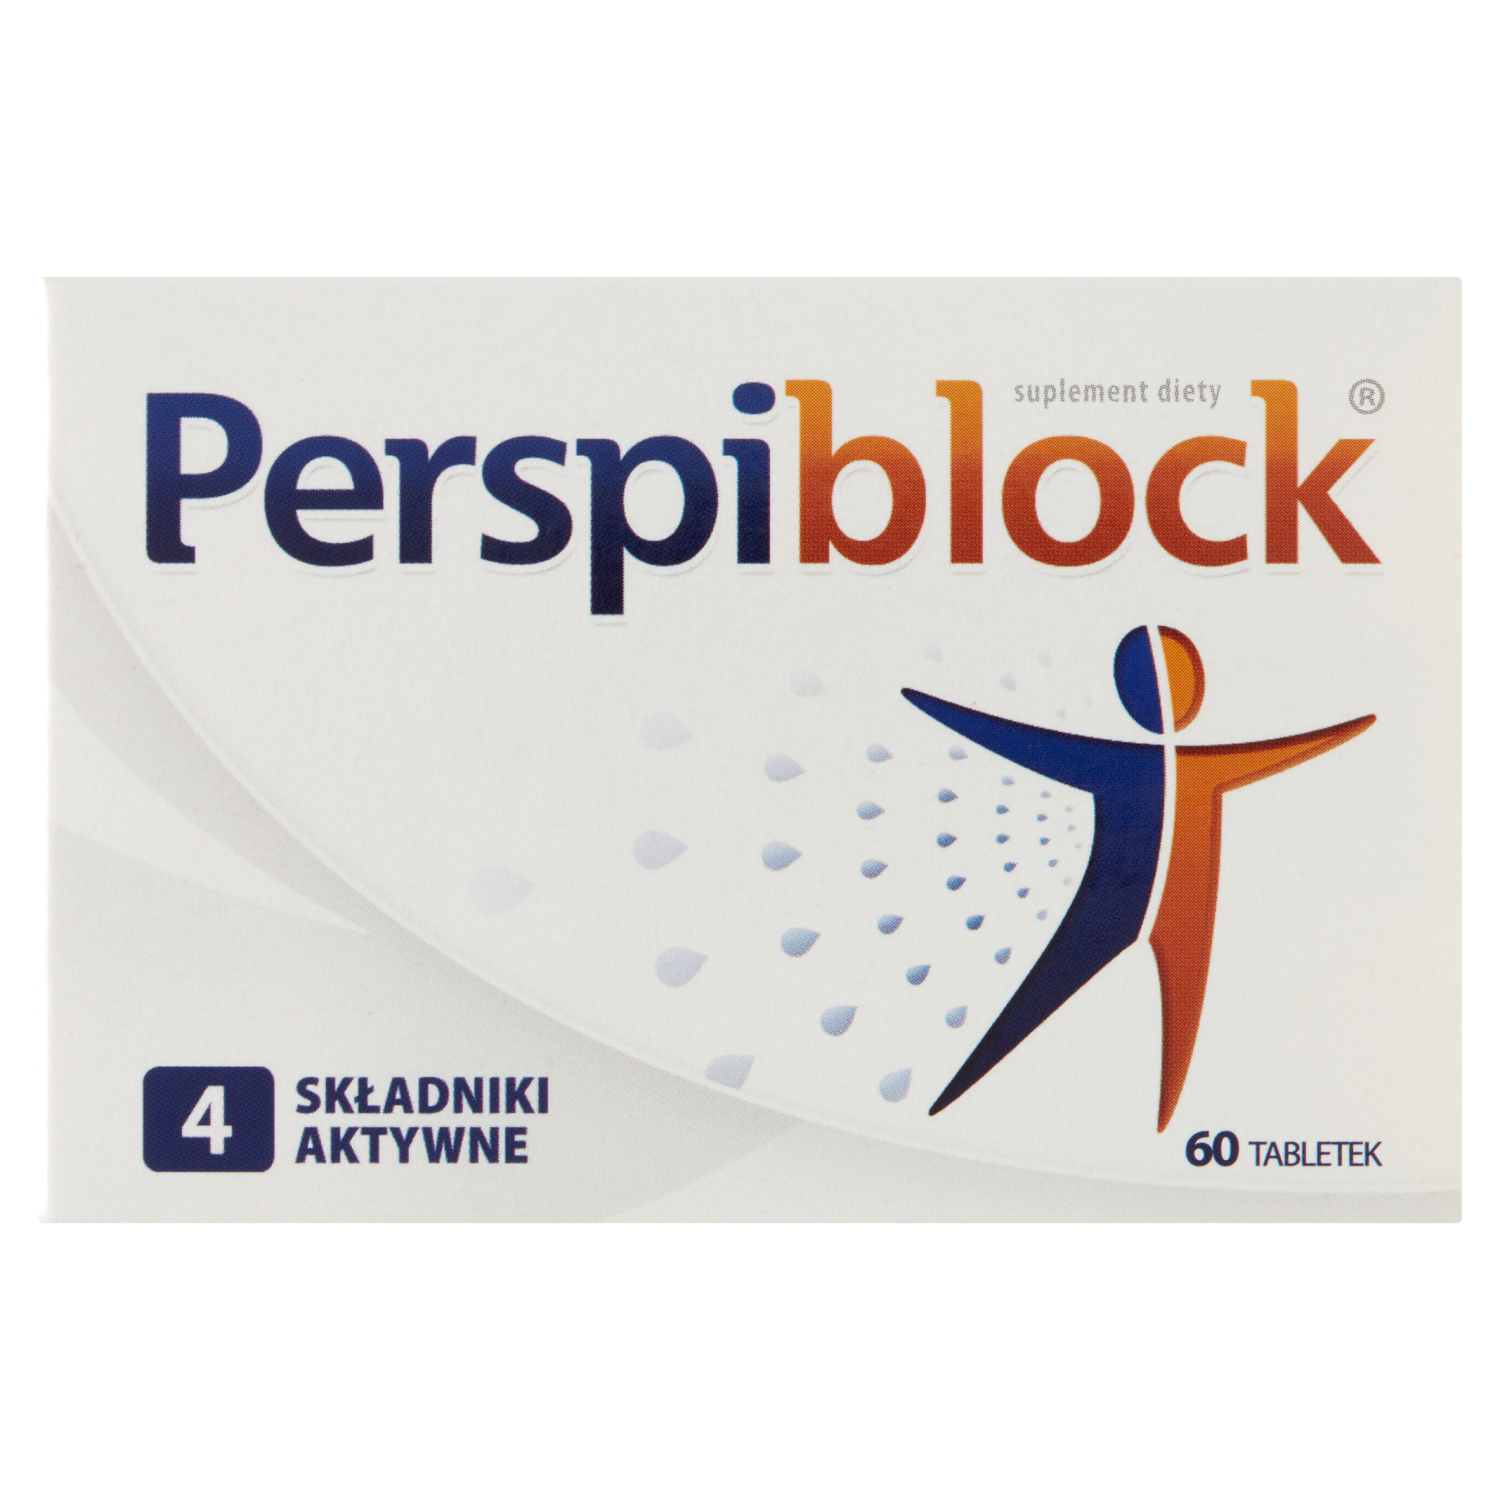 liporedium биологически активная добавка 60 таблеток 1 упаковка Perspiblock биологически активная добавка, 60 таблеток/1 упаковка